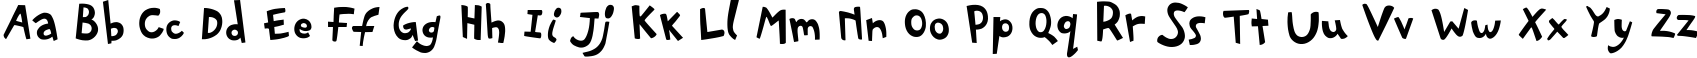 Пример написания английского алфавита шрифтом PFPlayskoolPro-Regular